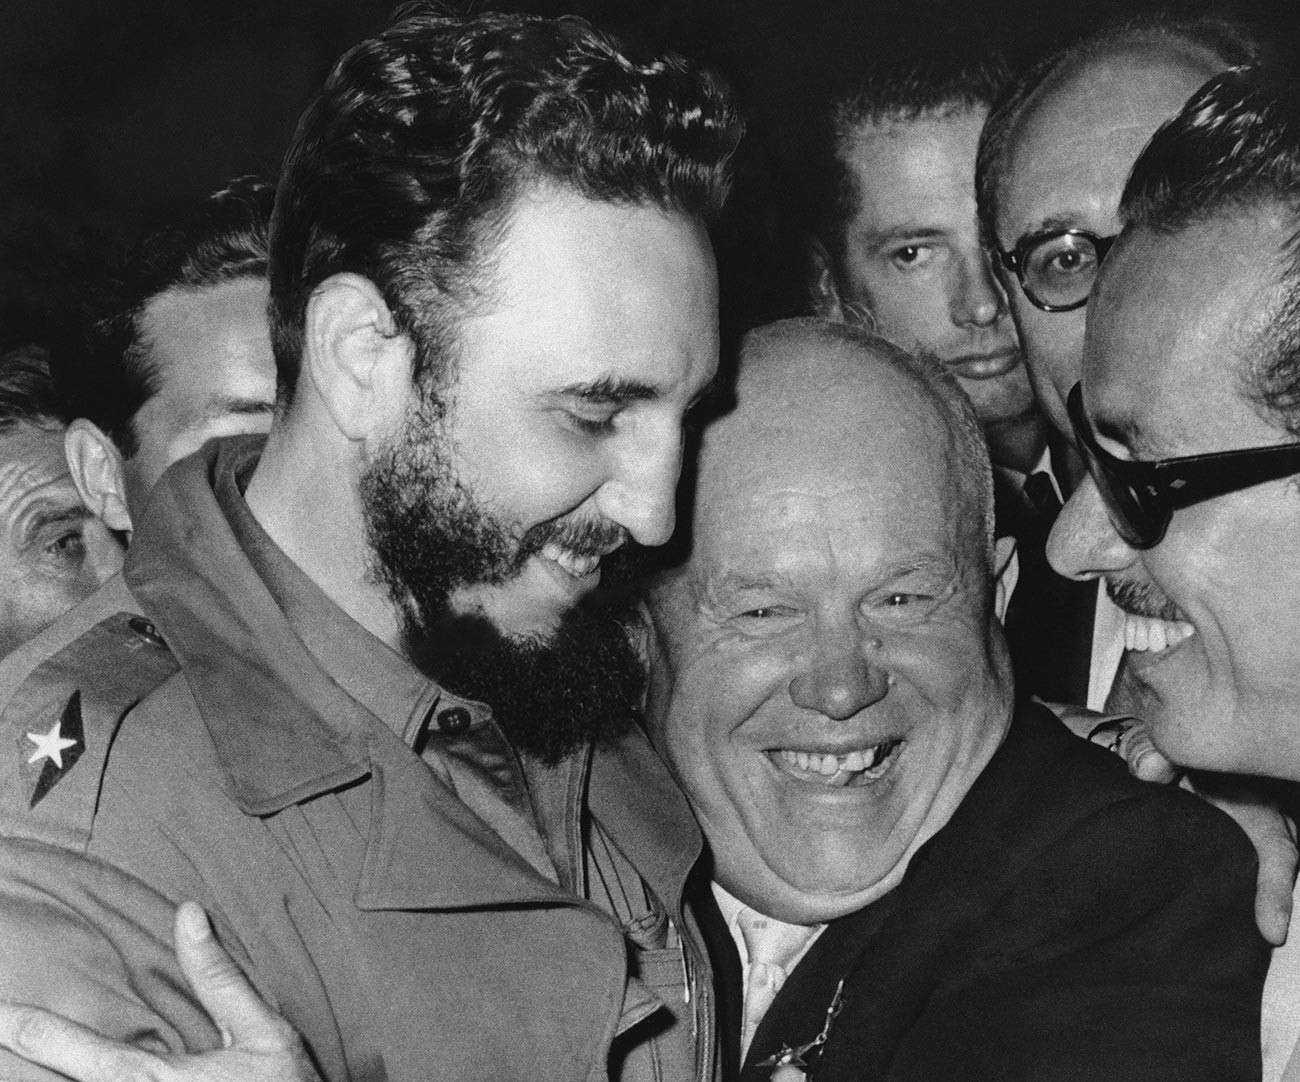 L'URSS avait des relations chaleureuses avec Cuba et le dirigeant soviétique Nikita Khrouchtchev avait des relations encore plus chaleureuses avec Fidel Castro.